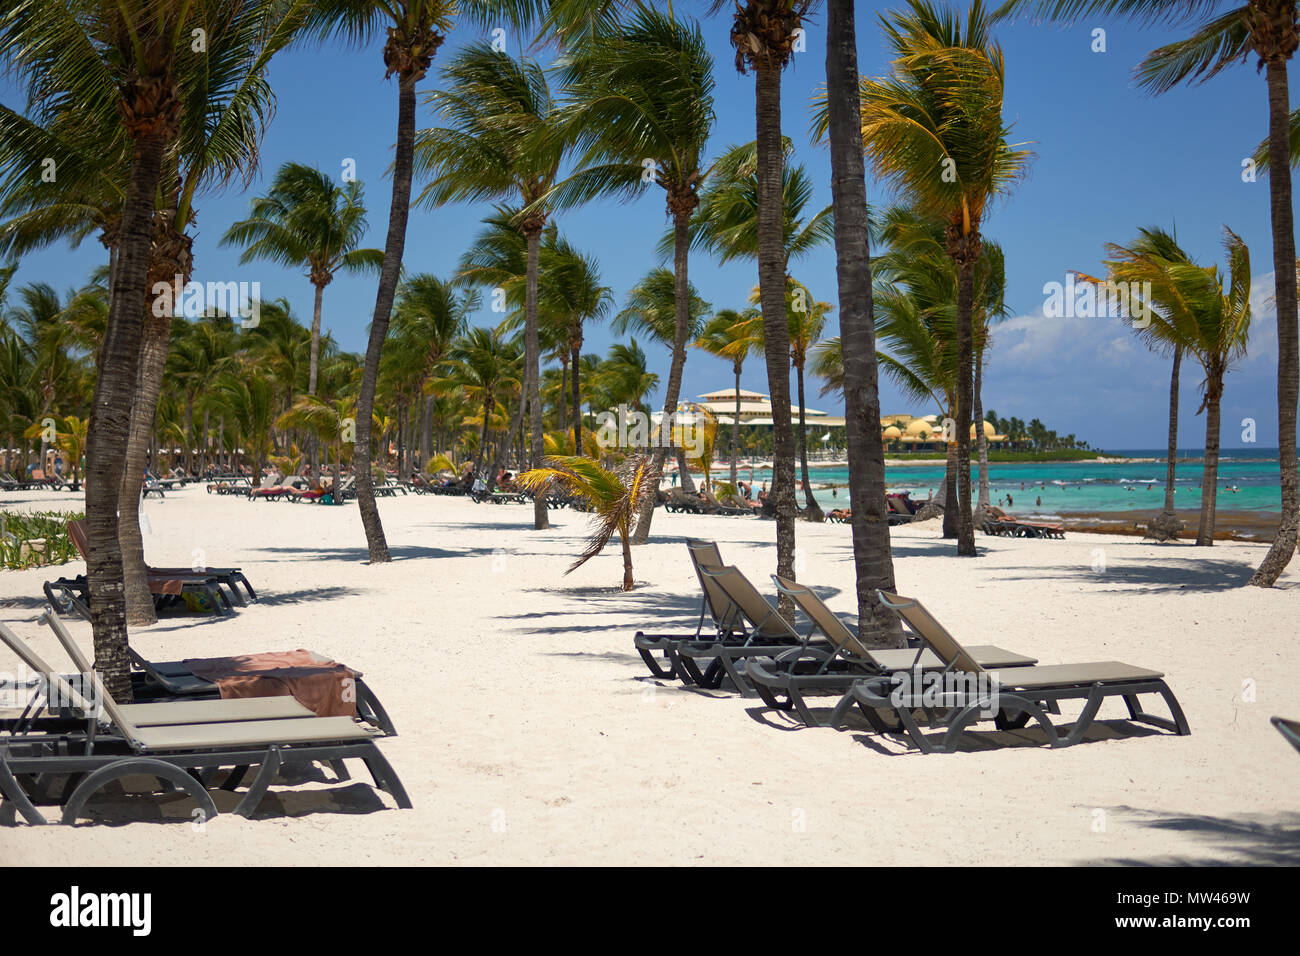 Vista resort hotel di lusso di spiaggia di Costa Tropicale. Foglie di palme da cocco che fluttua nel vento contro il cielo blu. Acque turchesi del Mar dei Caraibi. Riviera Maya Messico. Foto Stock